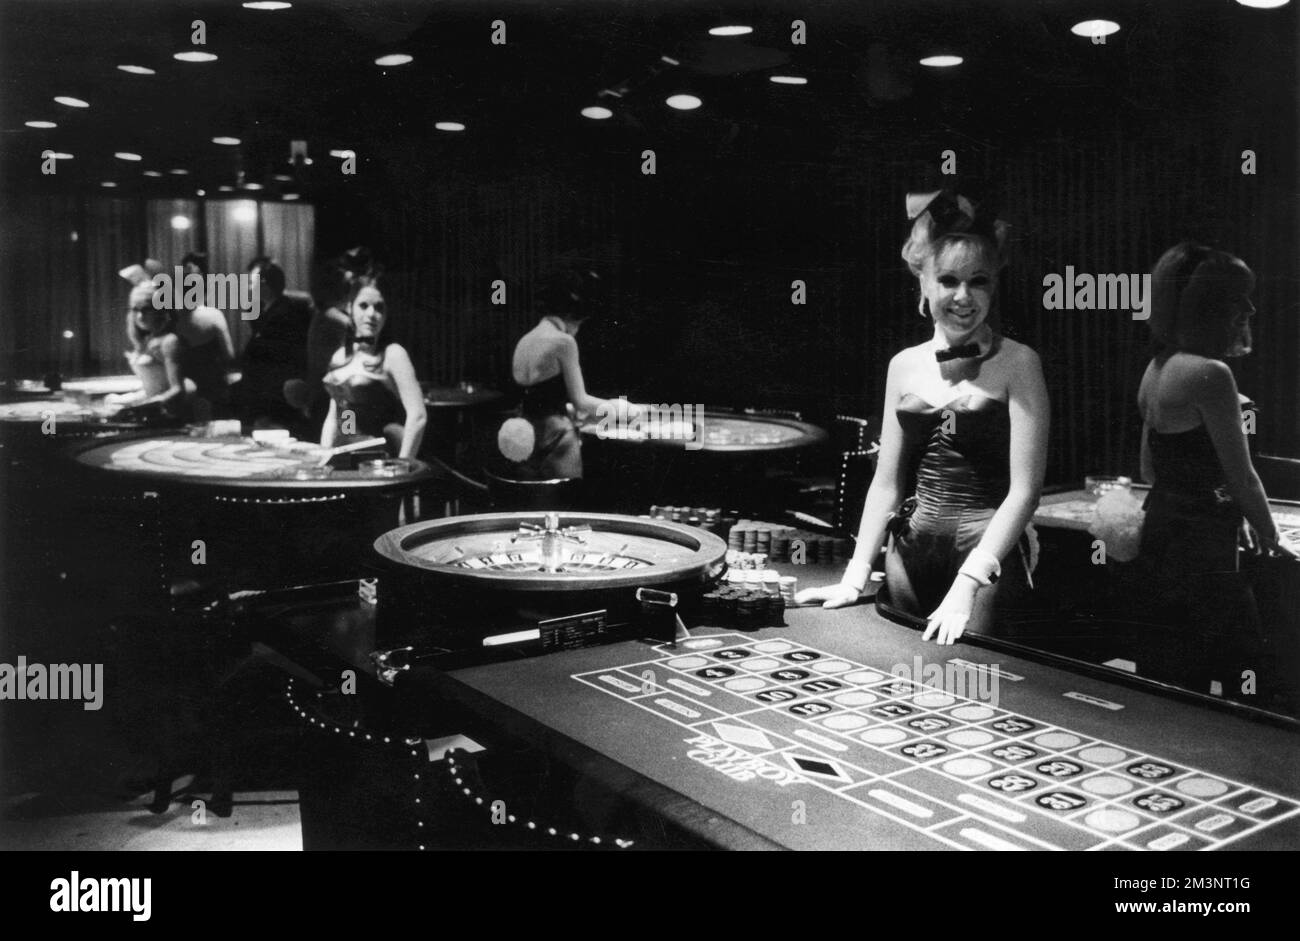 Les filles de Bunny exploitent des tables de jeu au Playboy Club de Londres qui a ouvert ses portes en 1966. Date: 1969 Banque D'Images